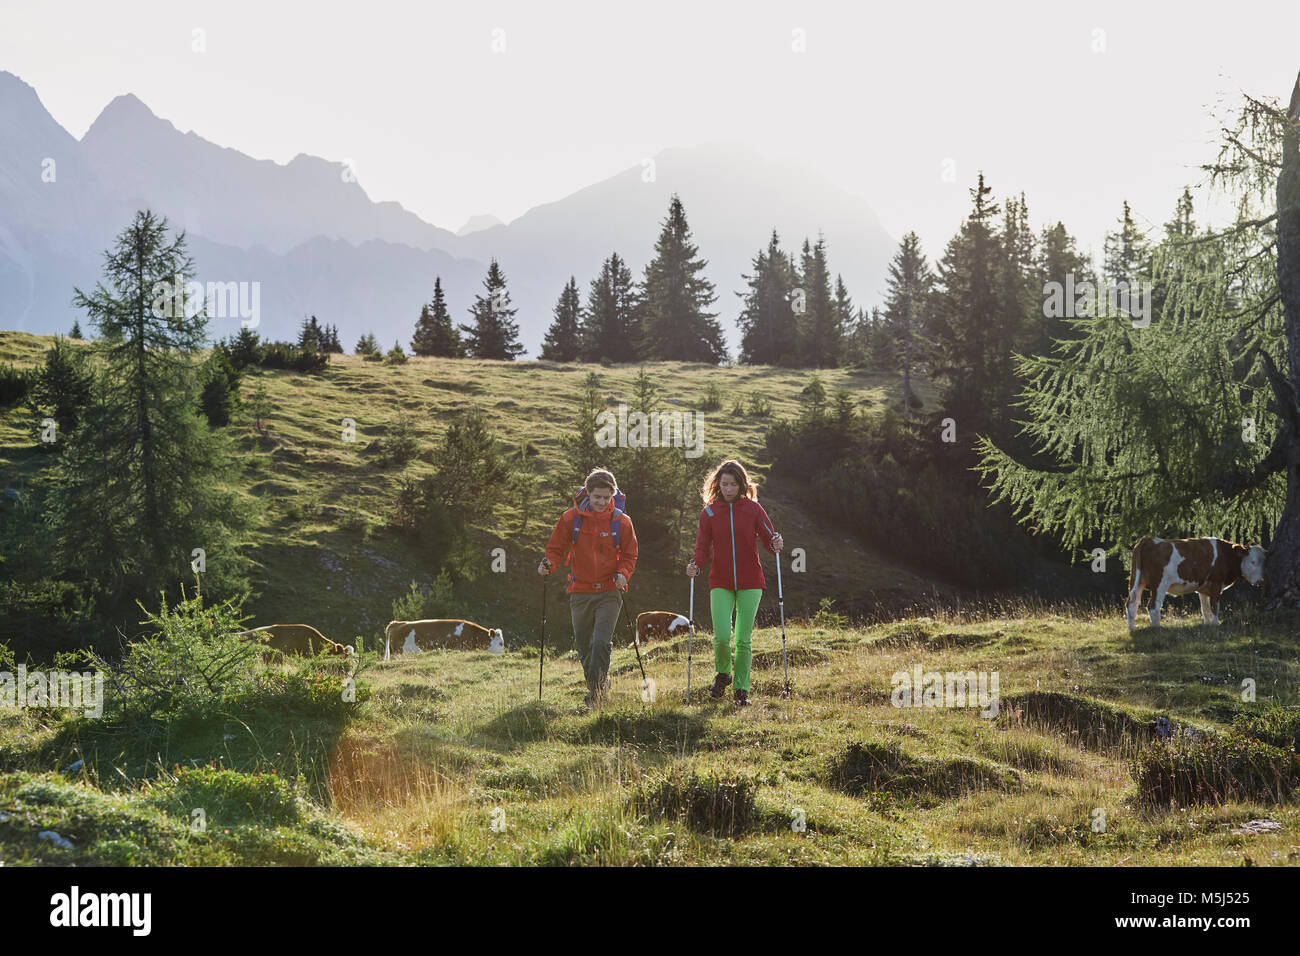 Autriche, Tyrol, Plateau de Mieming, les randonneurs marche sur pré alpin avec des vaches Banque D'Images